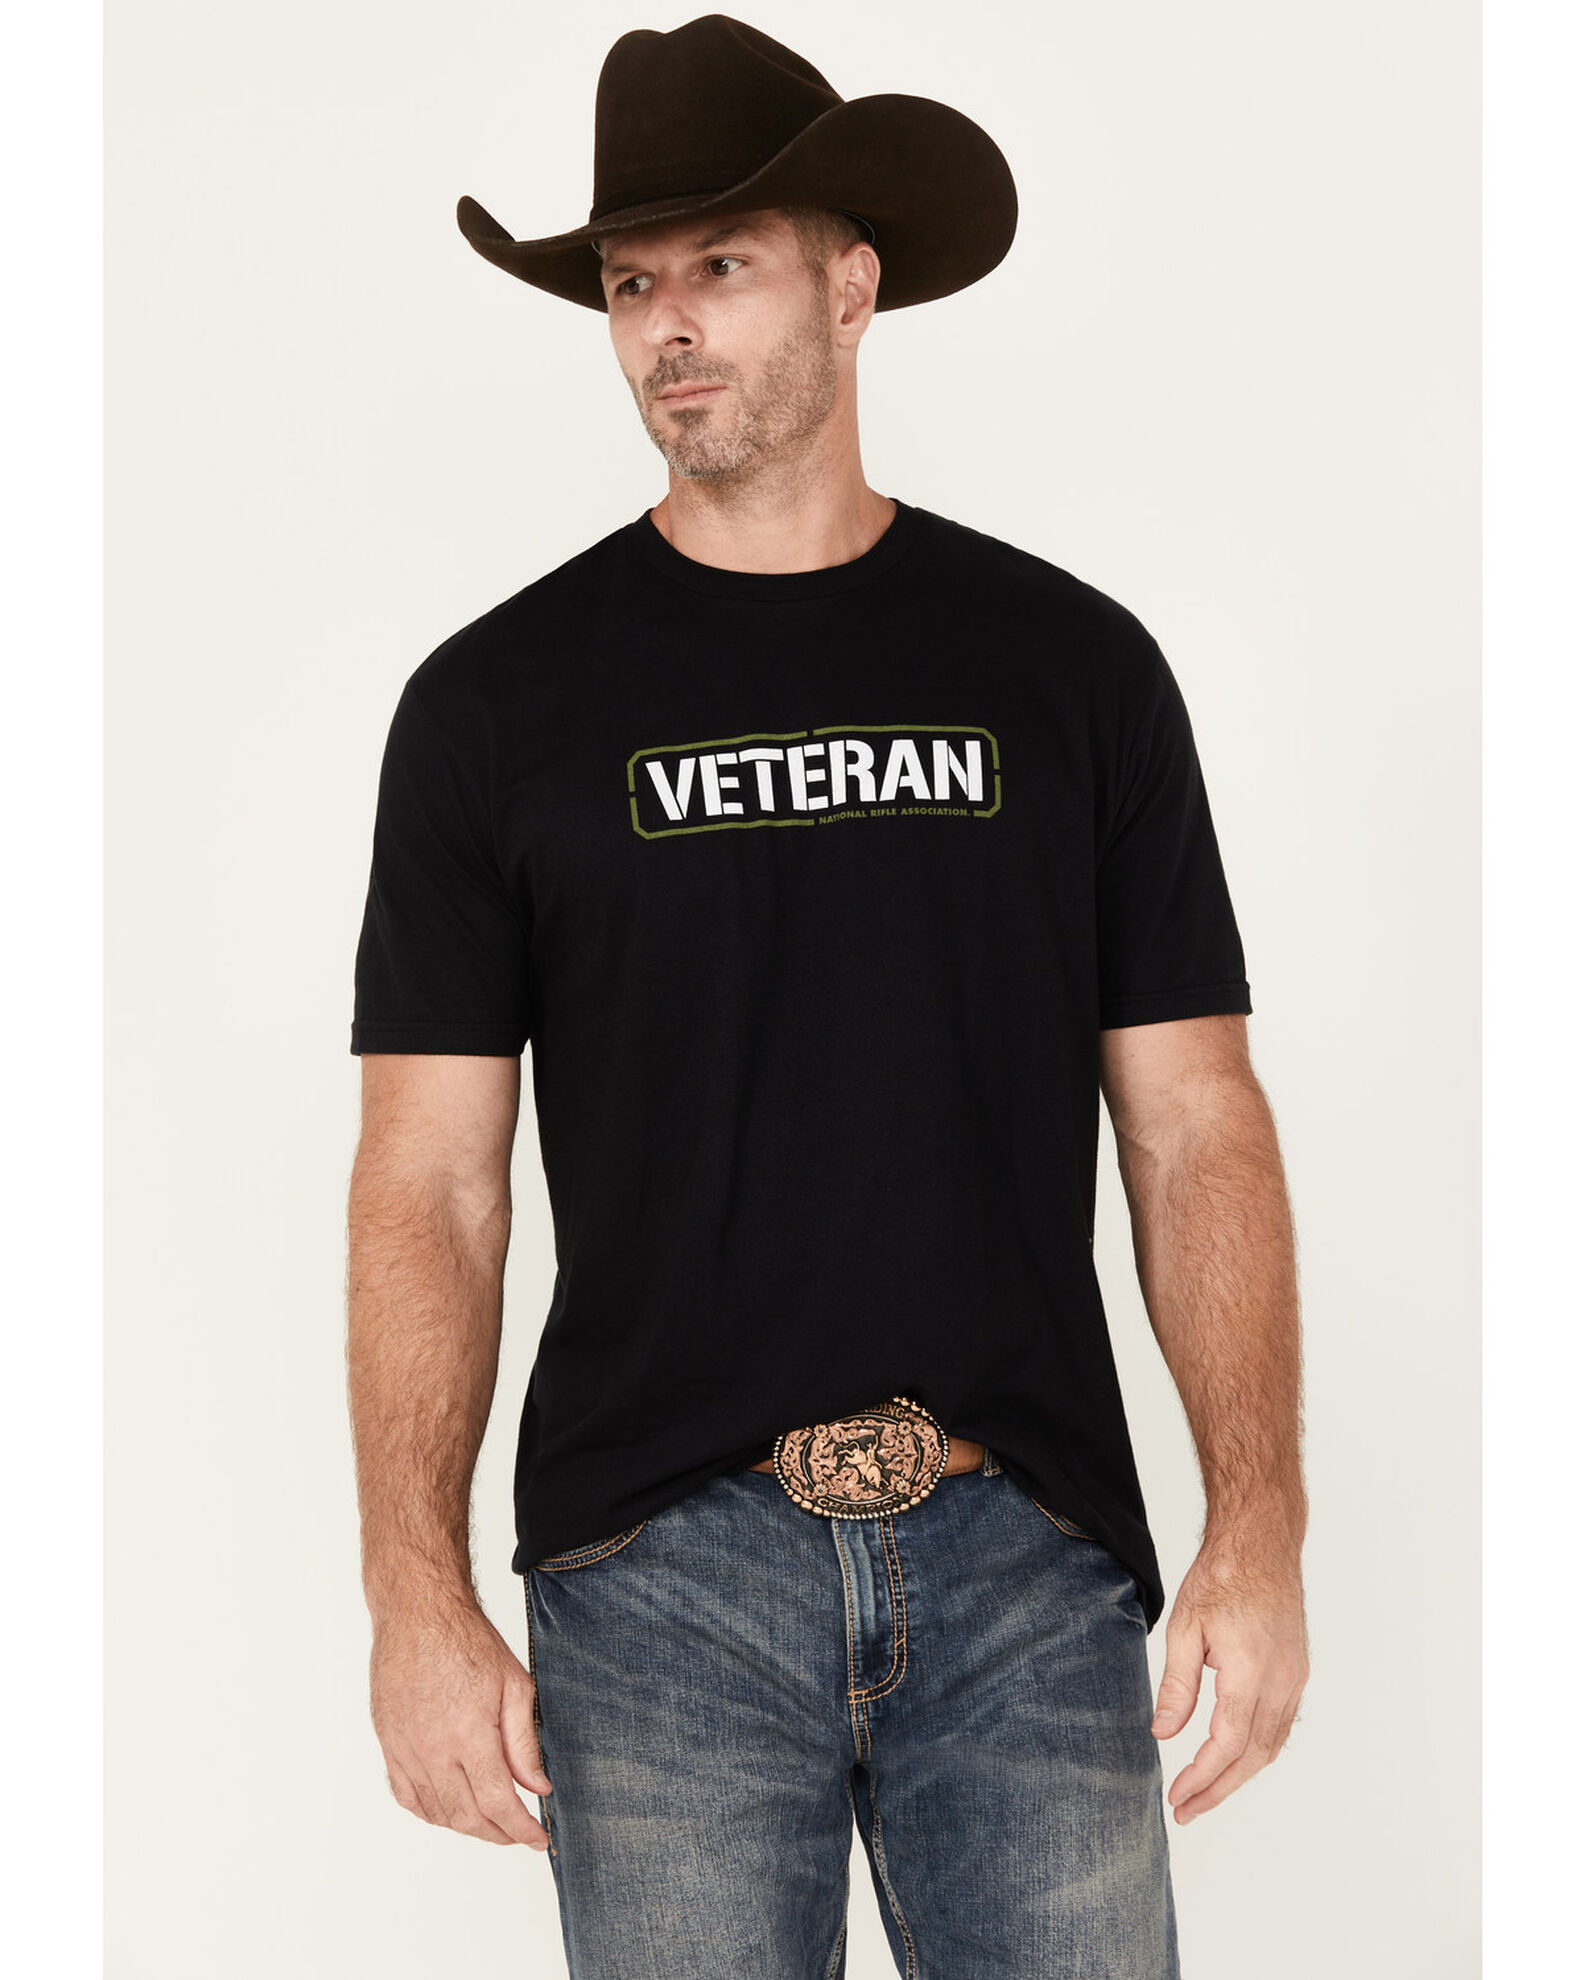 NRA Men's Veteran Flag Short Sleeve Graphic T-Shirt